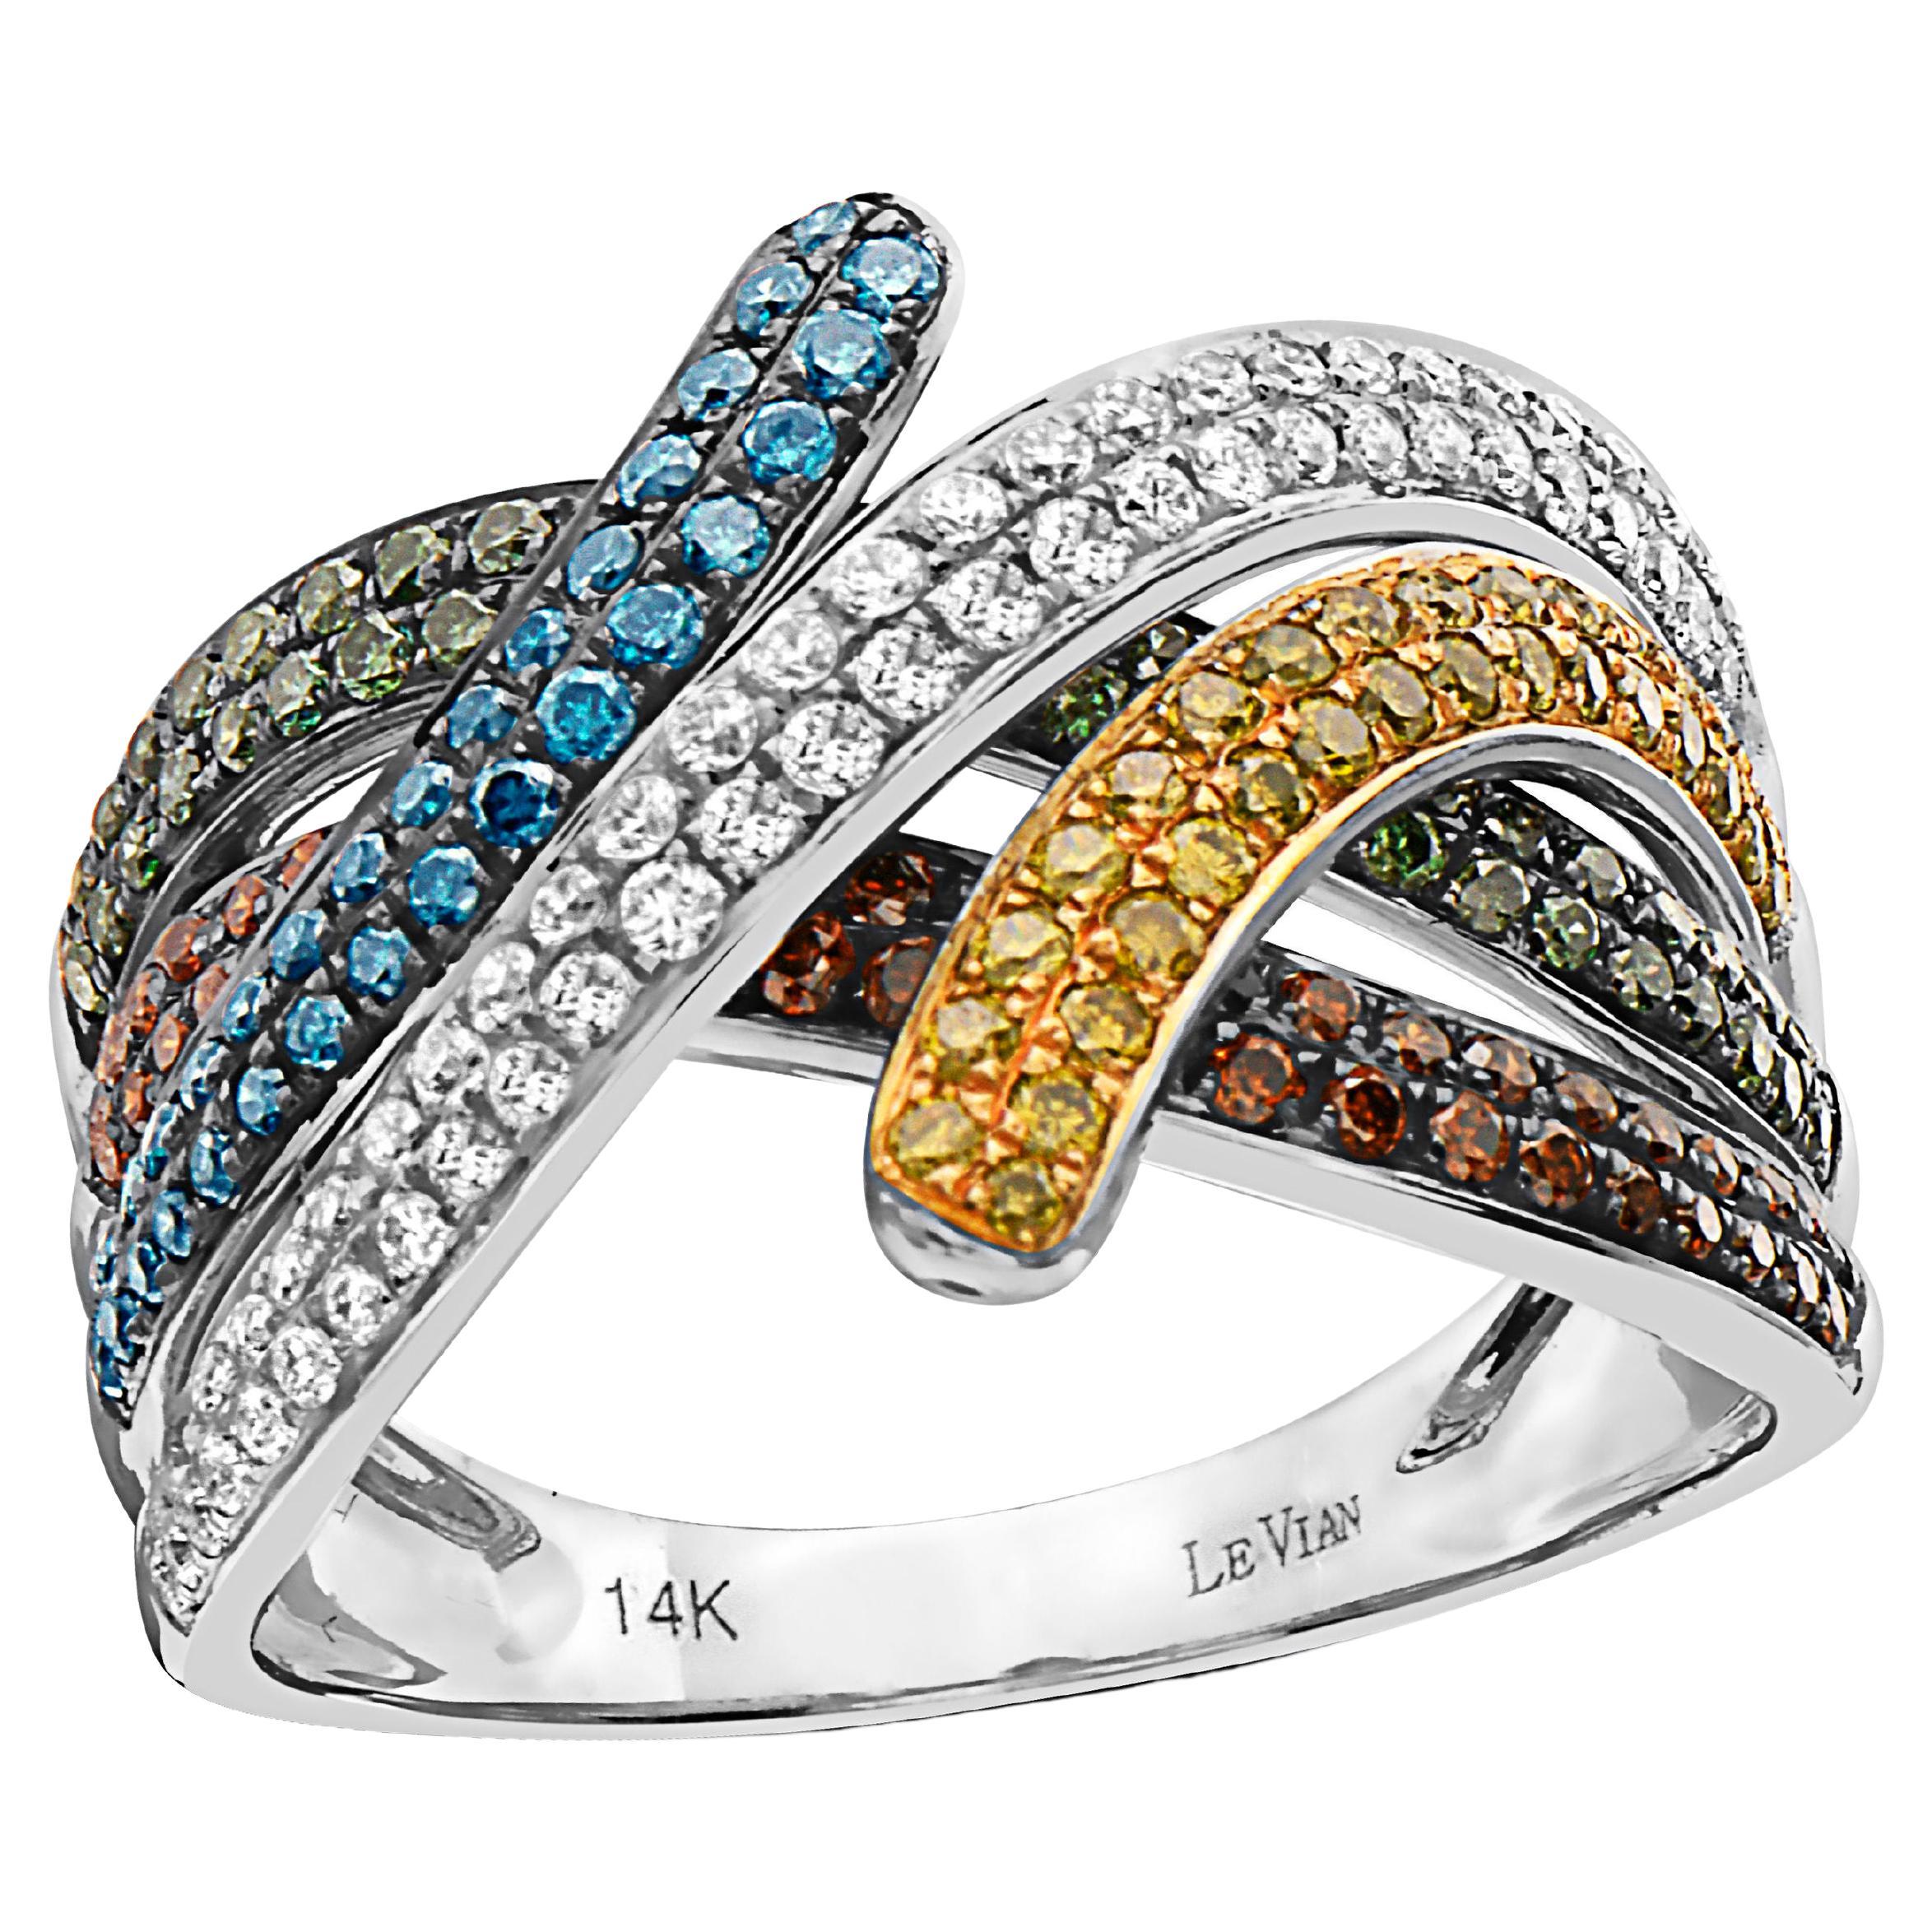 LeVian Ring 1 1/8 Karat rote, blaue und weiße natürliche Diamanten in 14 Karat Weißgold gefasst